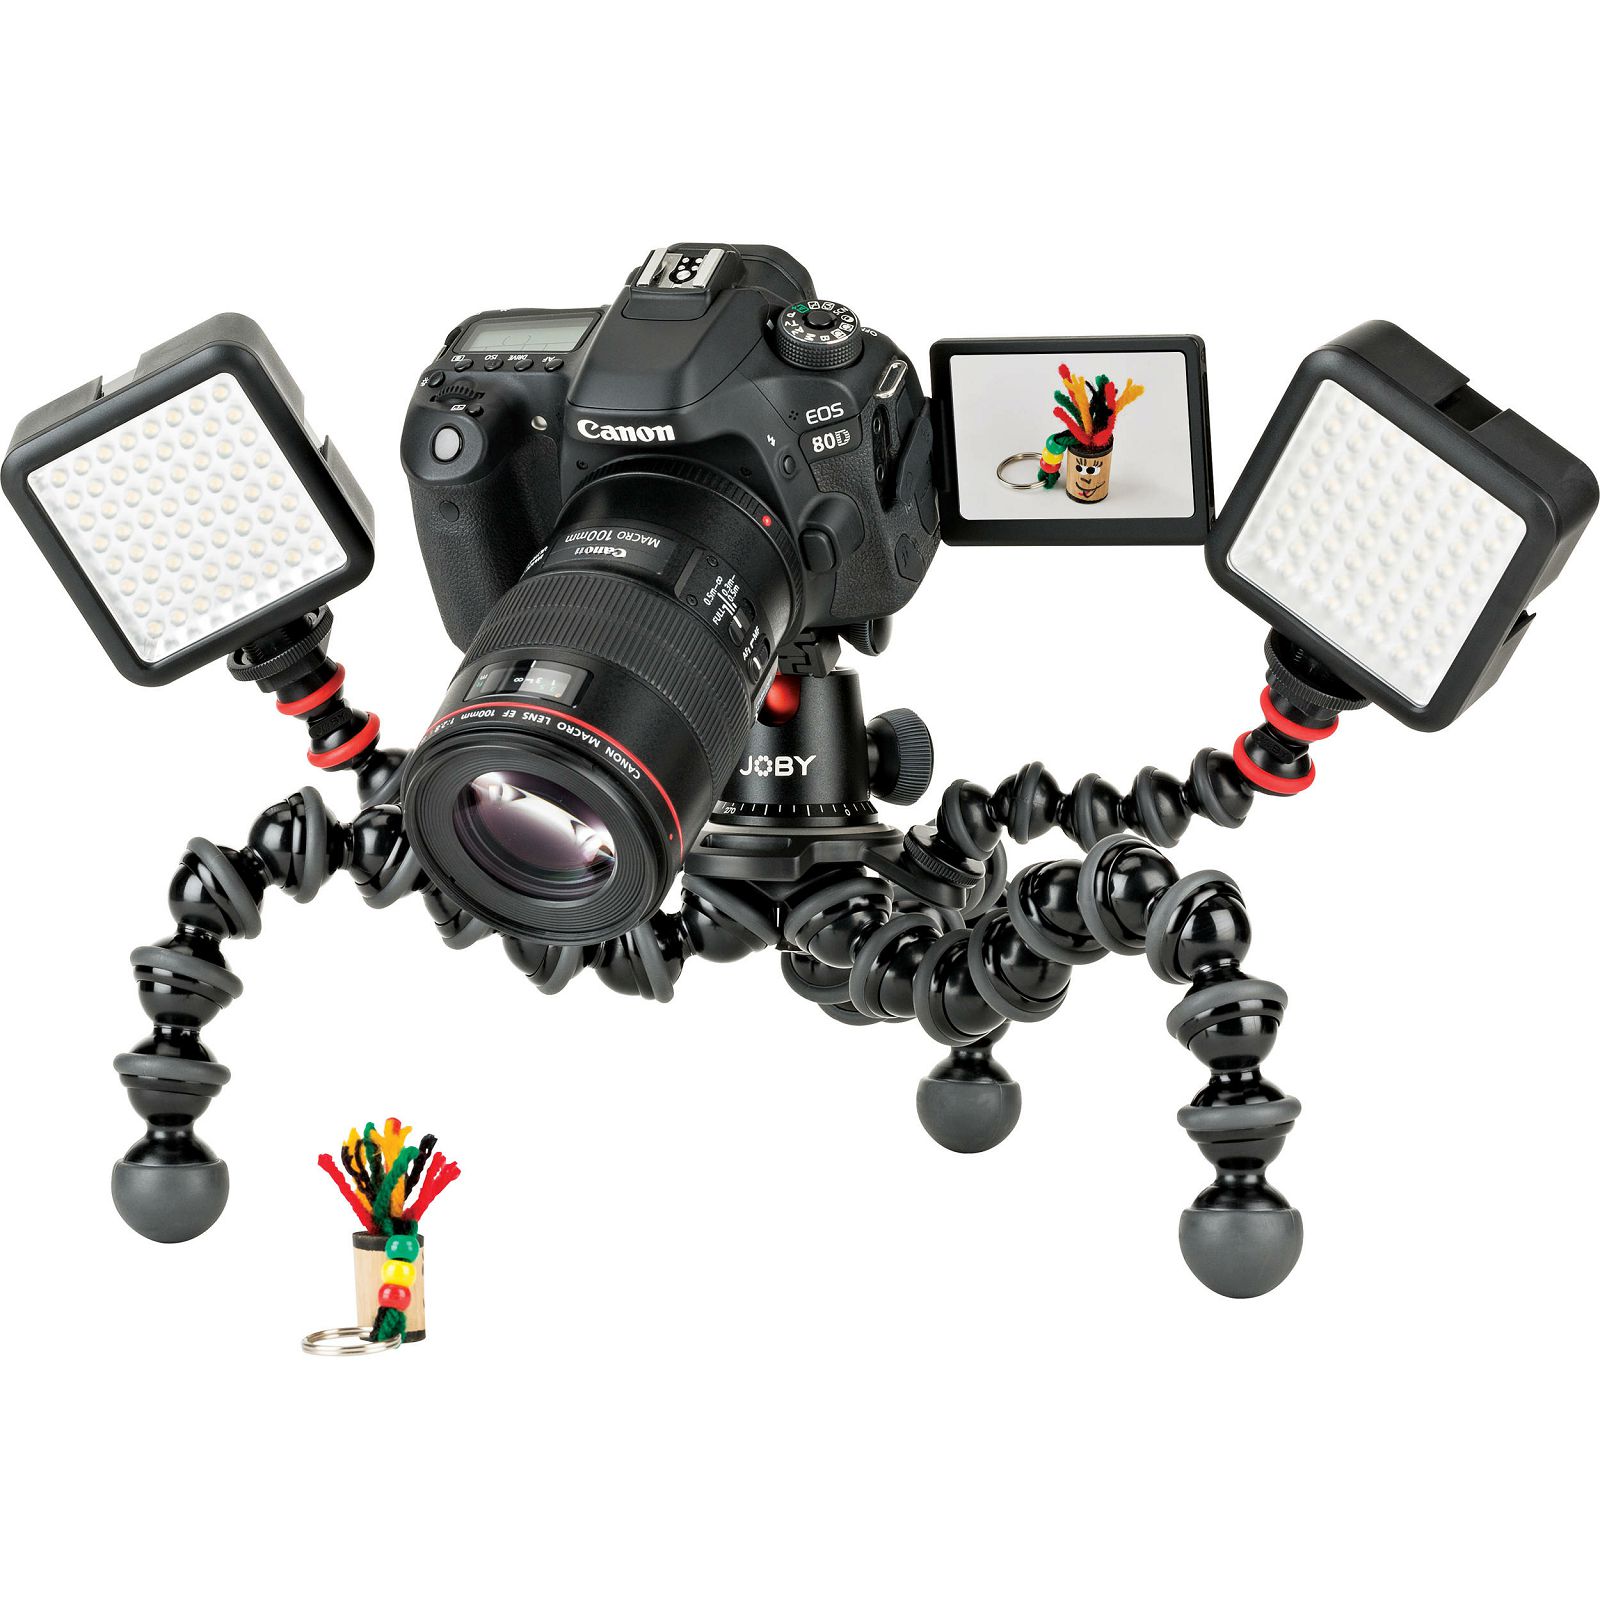 Joby GorillaPod Rig Black Grey zglobni podesivi stativ s kuglastom glavom i arca swiss pločicom za fotoaparat (JB01522)